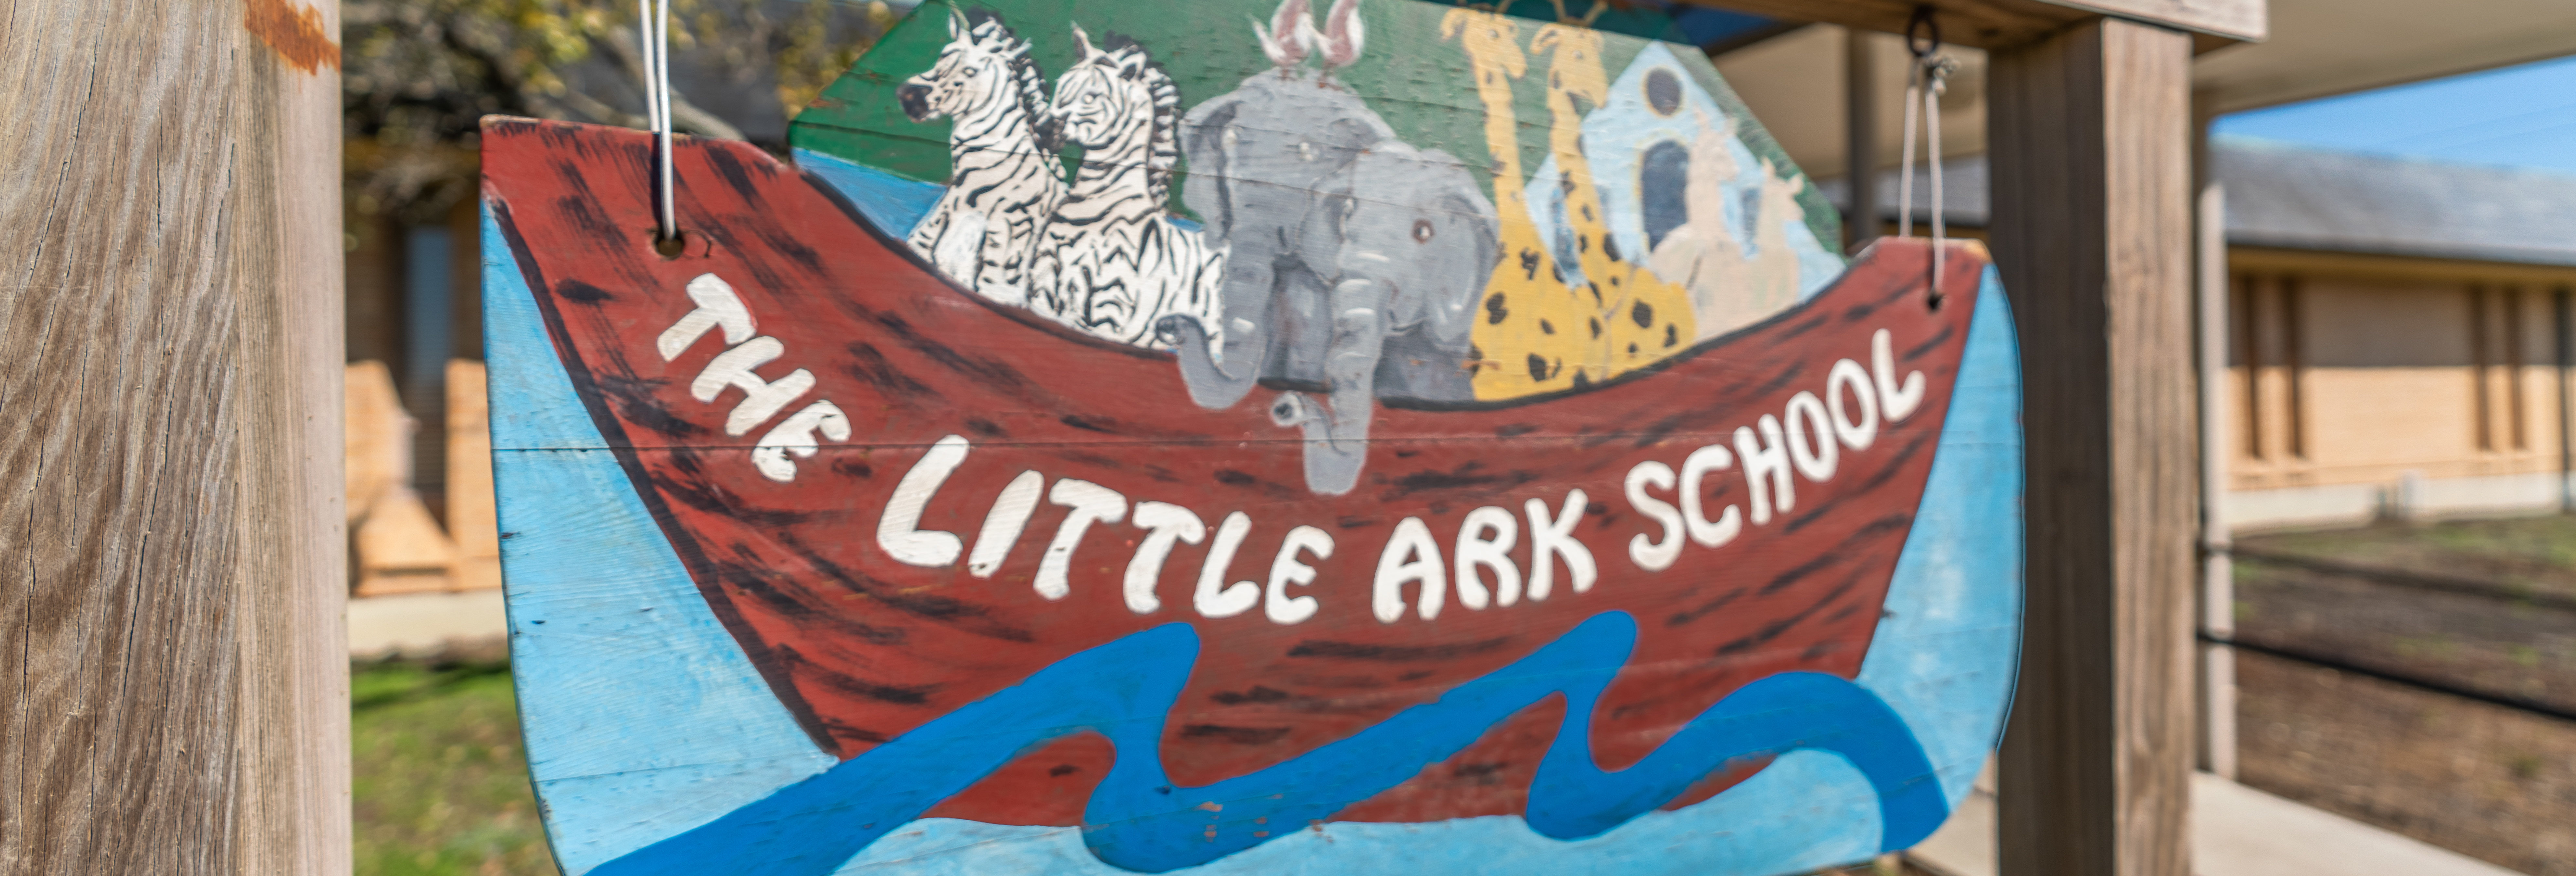 Little ark